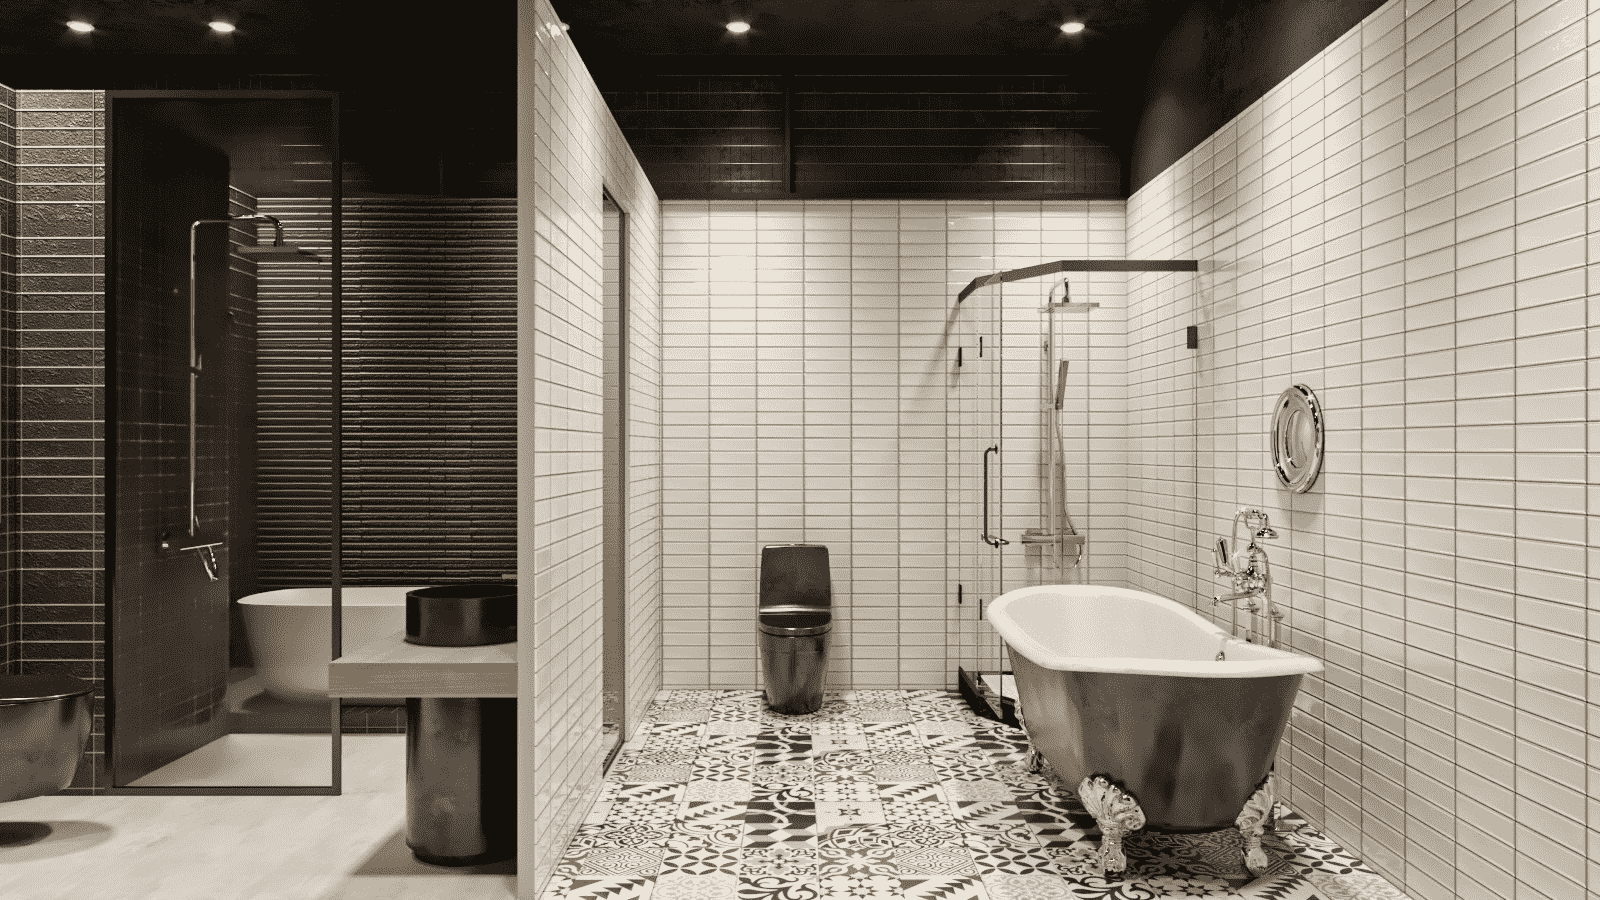 Bạn muốn tạo ra một không gian tắm rửa thư giãn và ấm áp? Hãy xem thử những bức ảnh về nhà vệ sinh có bồn tắm, một điểm nhấn tuyệt vời cho mọi người yêu thích chăm sóc bản thân. Chỉ cần thư giãn và thưởng thức những phút giây tuyệt vời trong không gian riêng của mình.